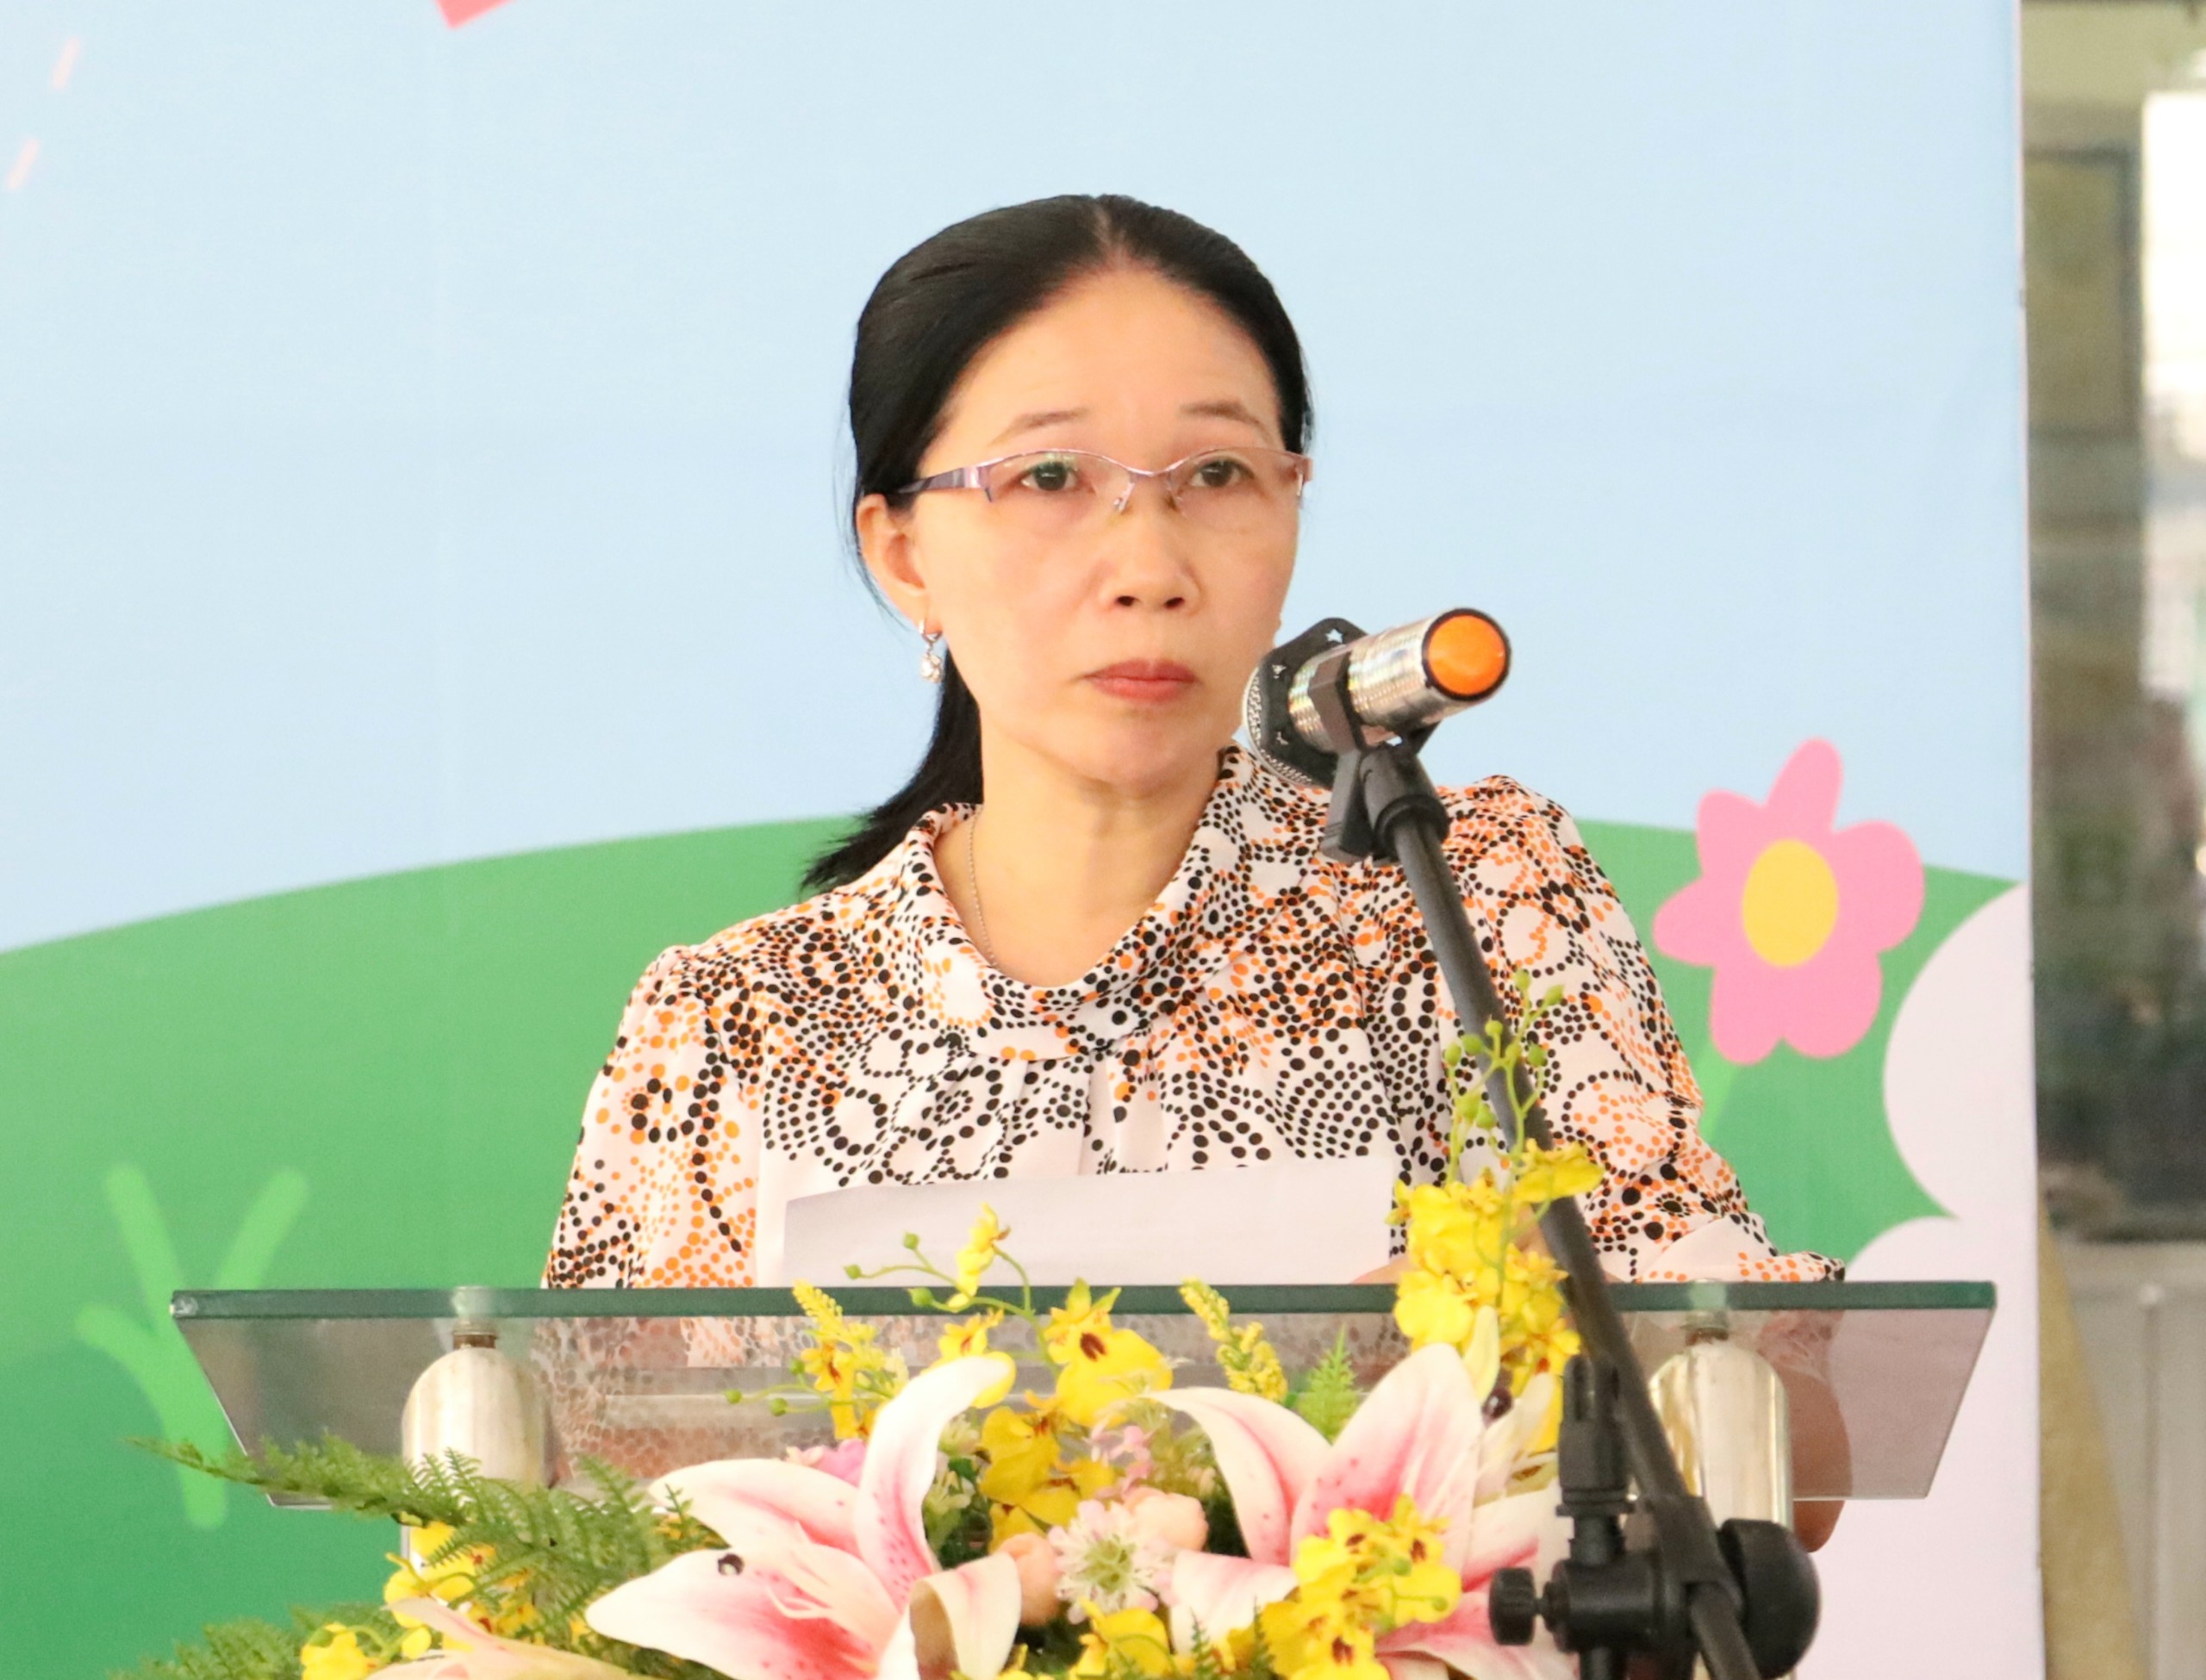 Chị Trần Thị Tuyết Nhung - phường Cái Khế, quận Ninh Kiều đại diện các gia đình phát biểu tại buổi họp mặt